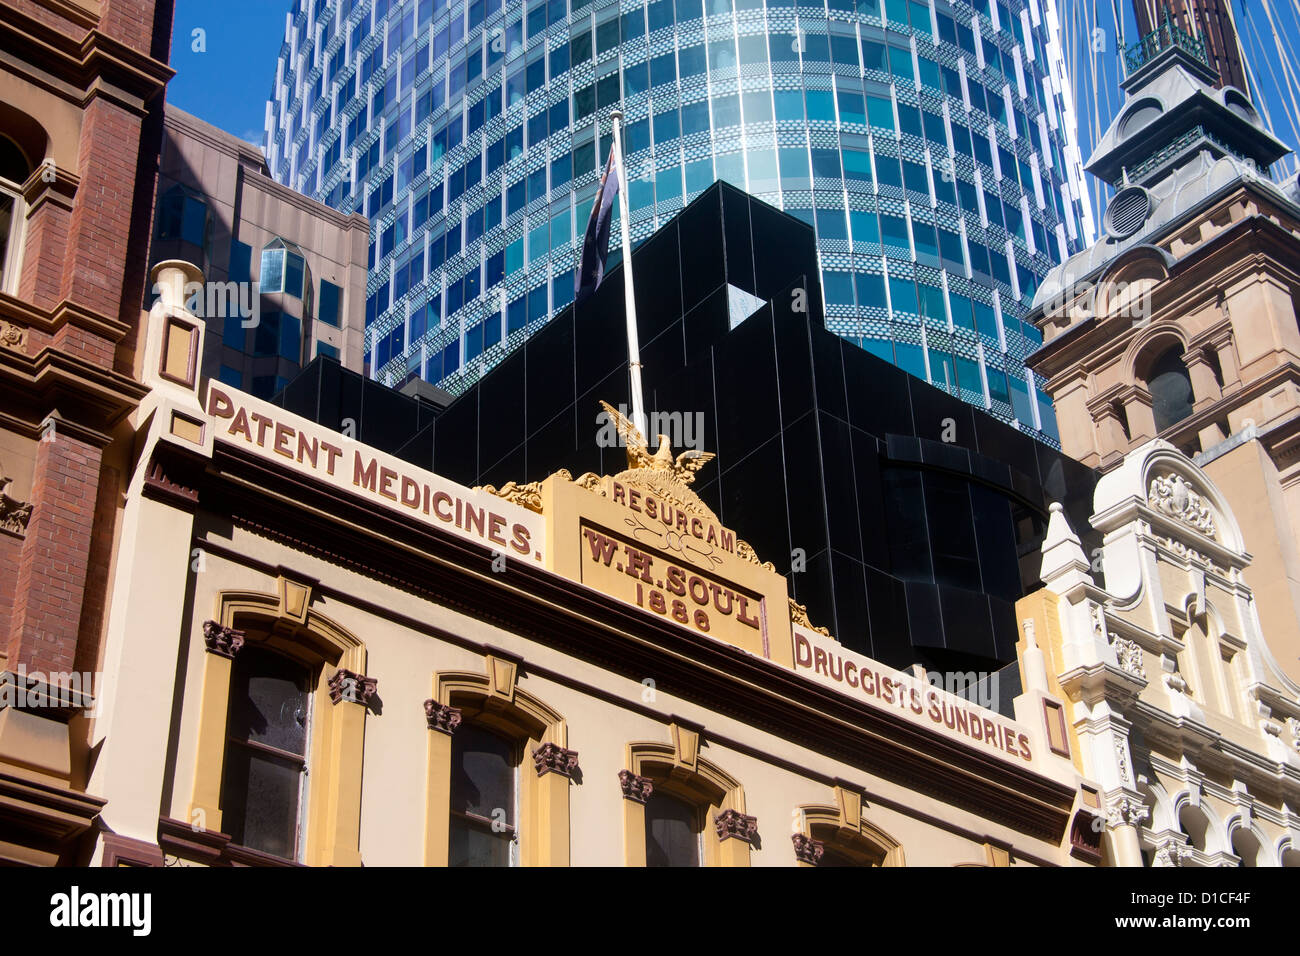 Mélange d'ancien régime colonial et l'architecture moderne / contemporain Pitt Street Sydney New South Wales (NSW) Australie Banque D'Images